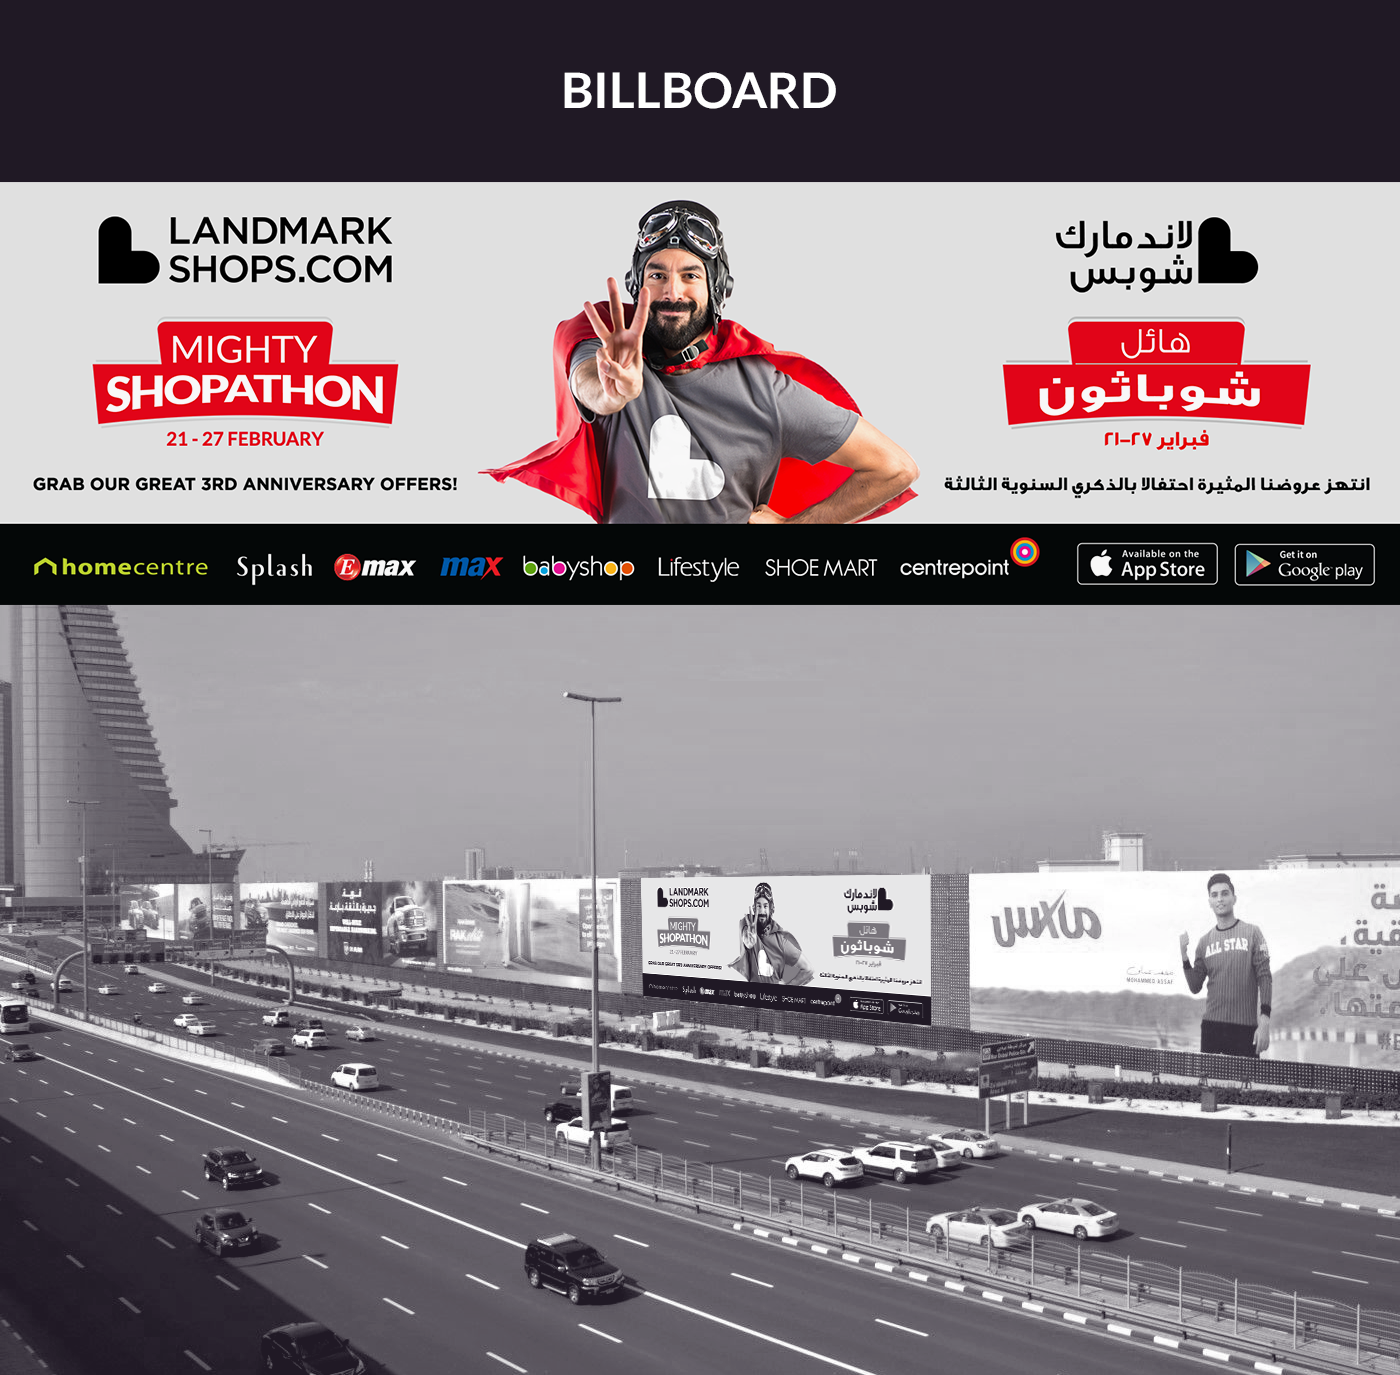 landmarkshops landmark group Shopathon banner design gdn banners google ads landing page design billboard design